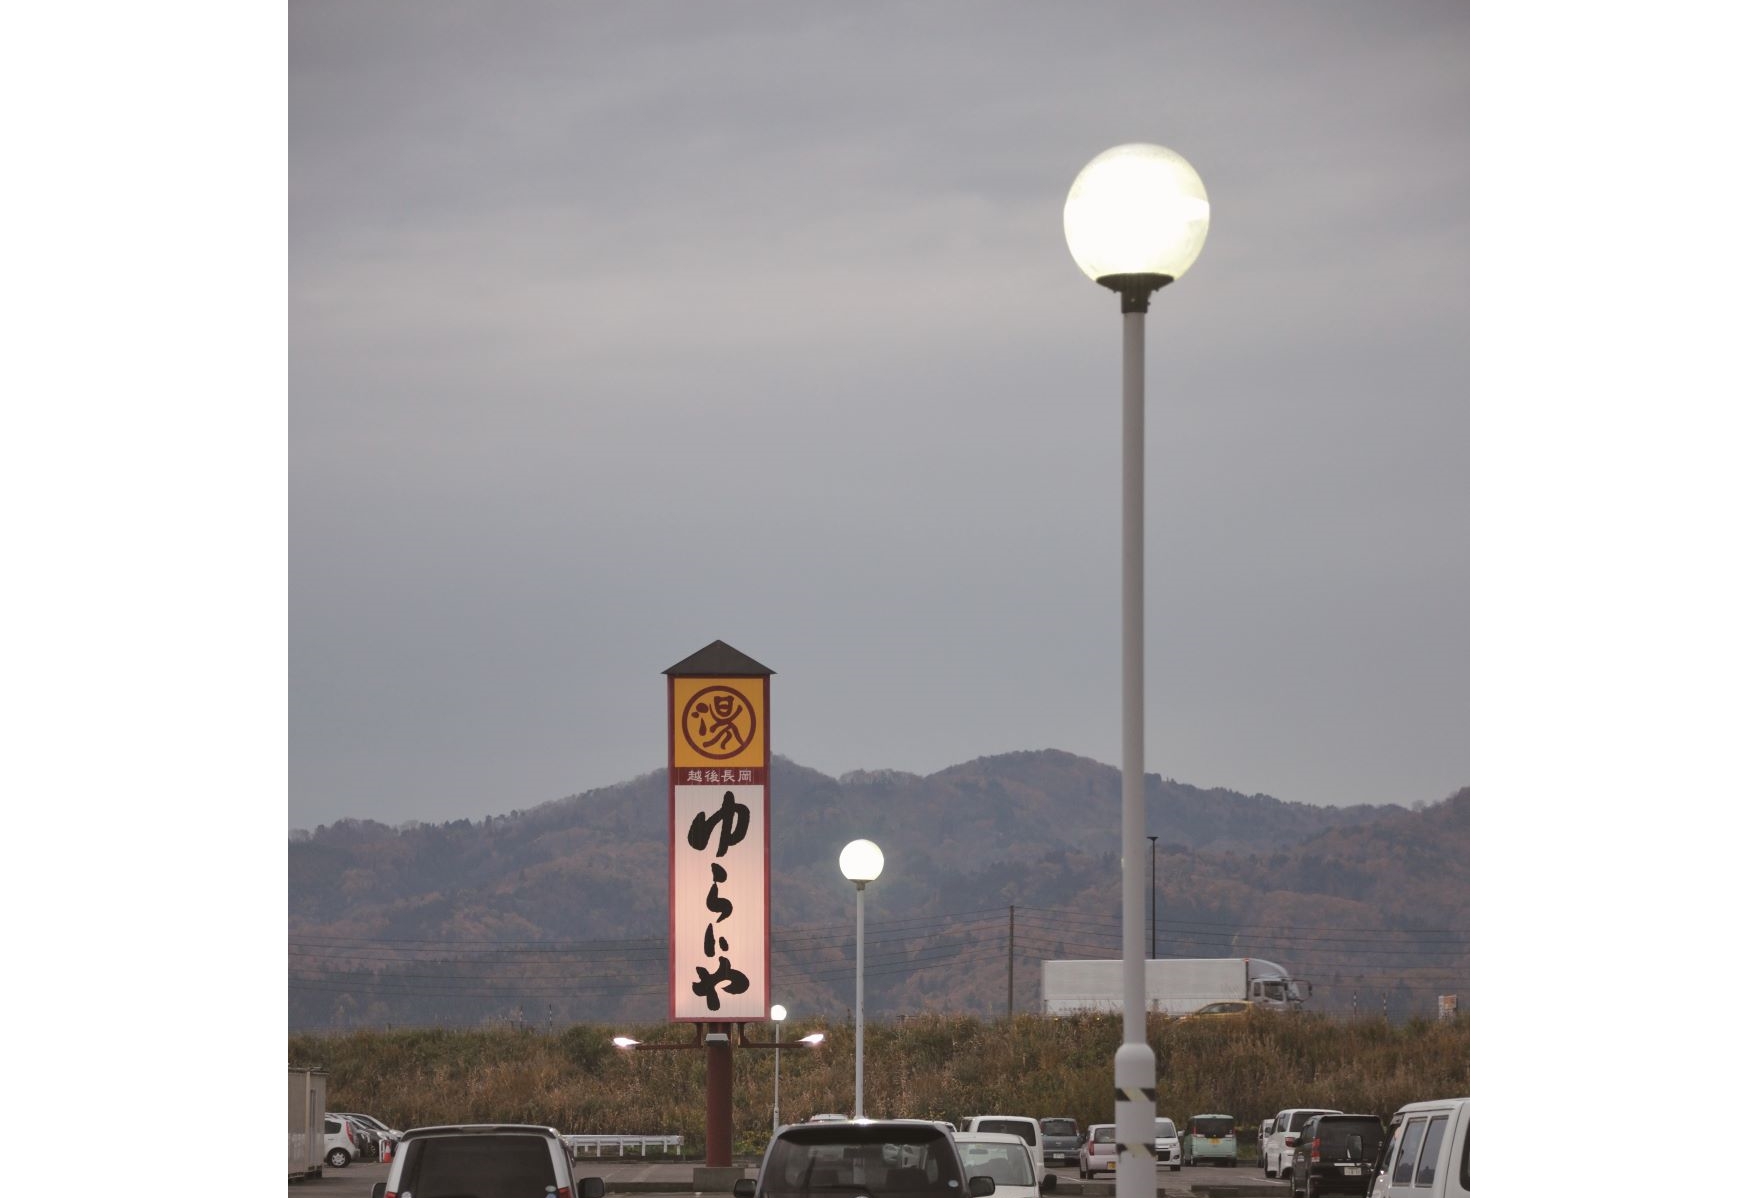 「リップスガーデン」の駐車場は、街路灯のすべてをLEDにリニューアル